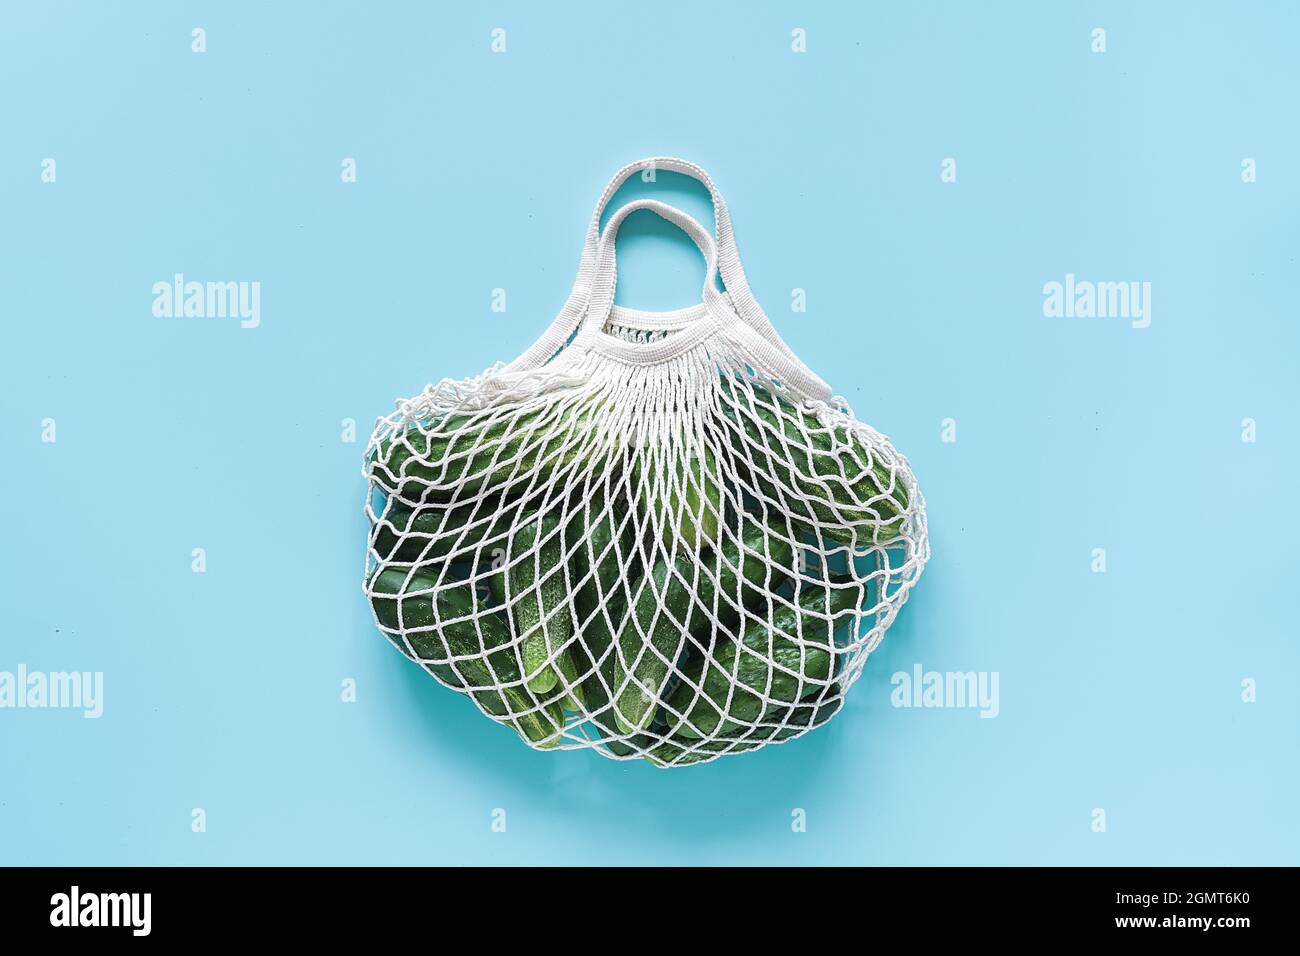 Concombres verts frais légumes dans un sac en maille écologique réutilisable sur fond bleu. Concept sans plastique et sans gaspillage. Copier l'espace vue de dessus Banque D'Images